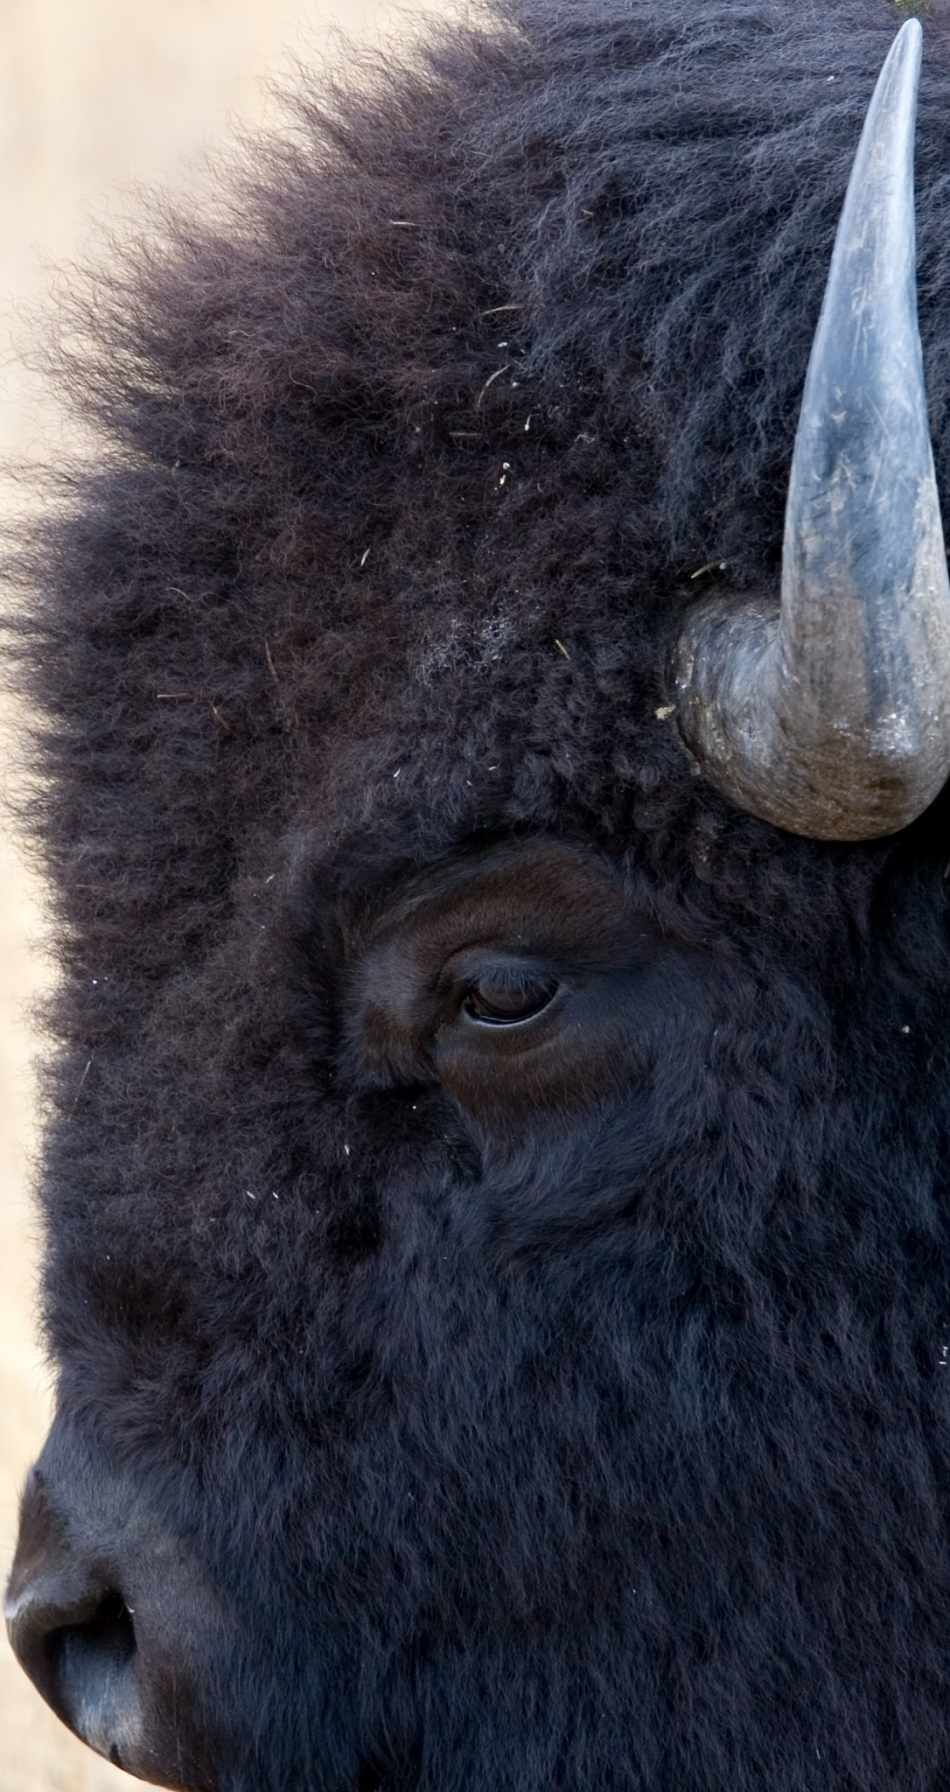 buffalo extreme close-up